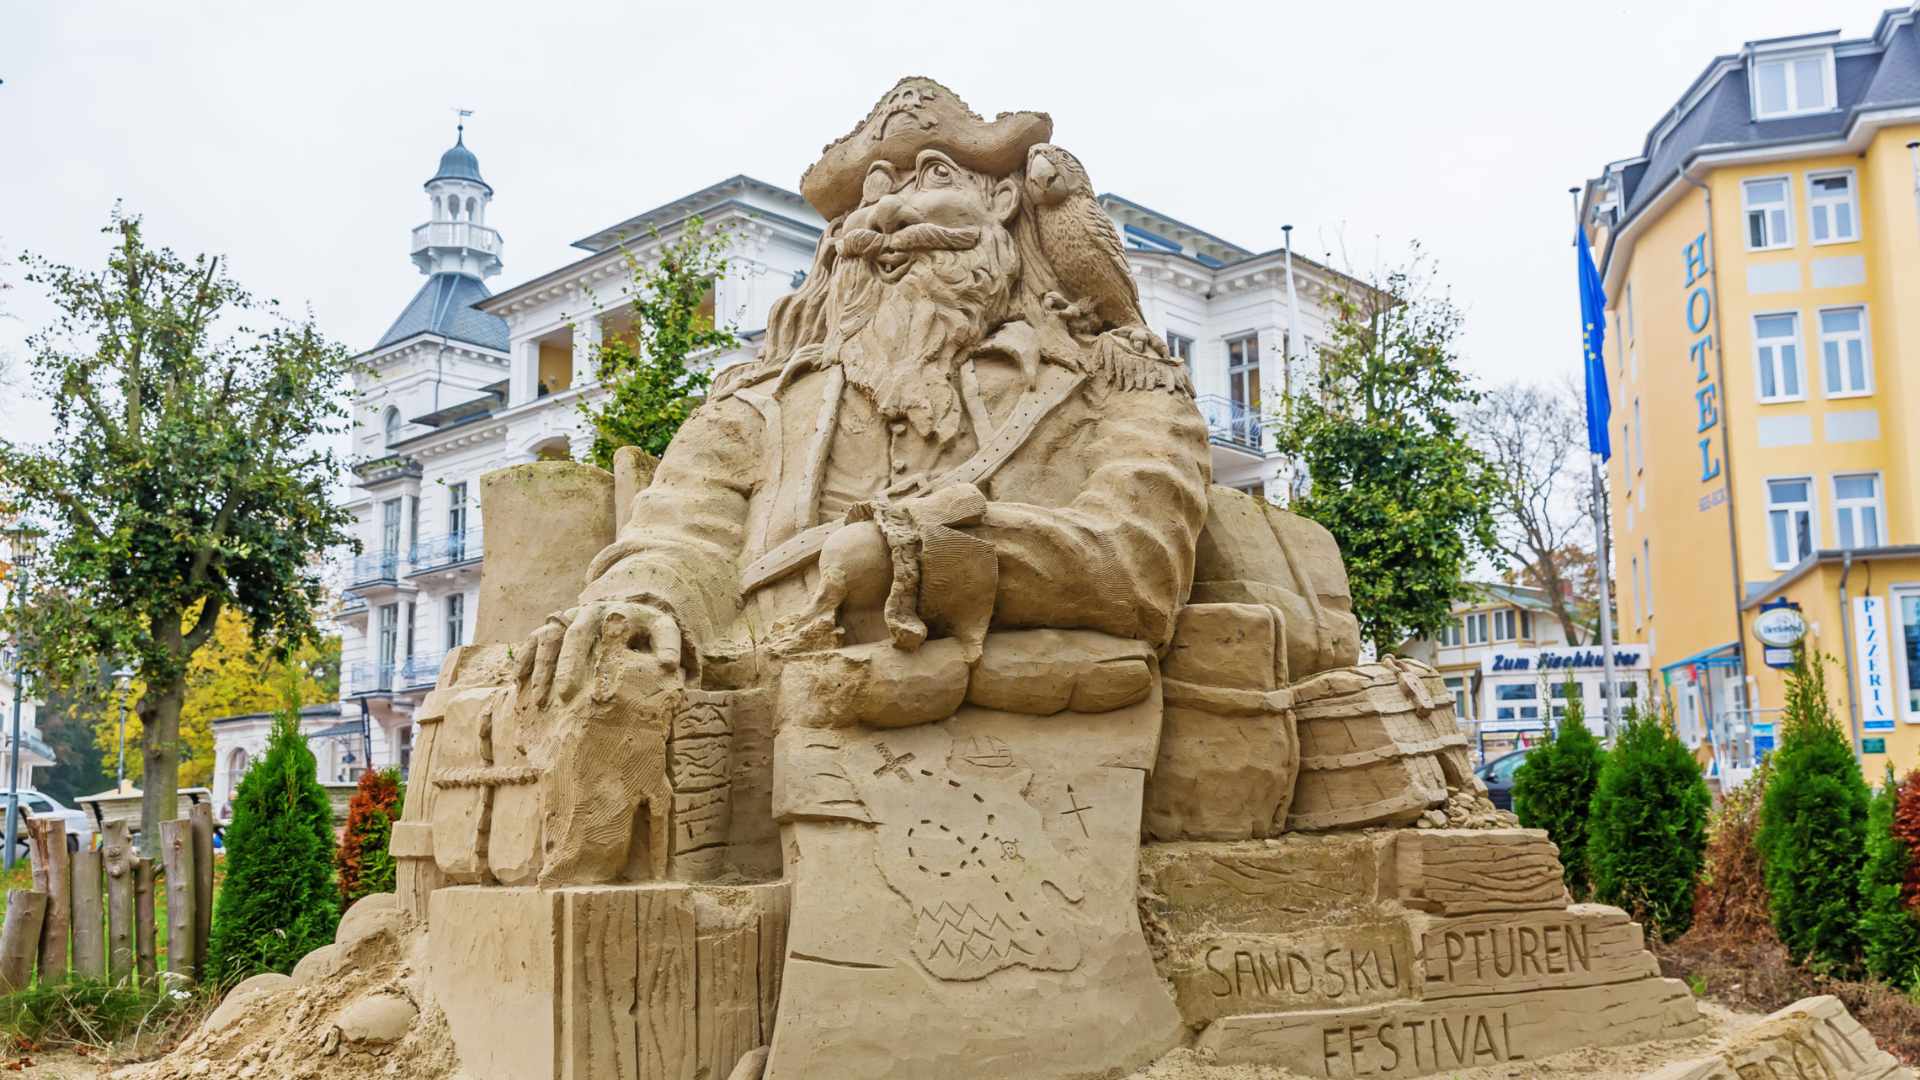 Sandskulpturen Festival auf Usedom